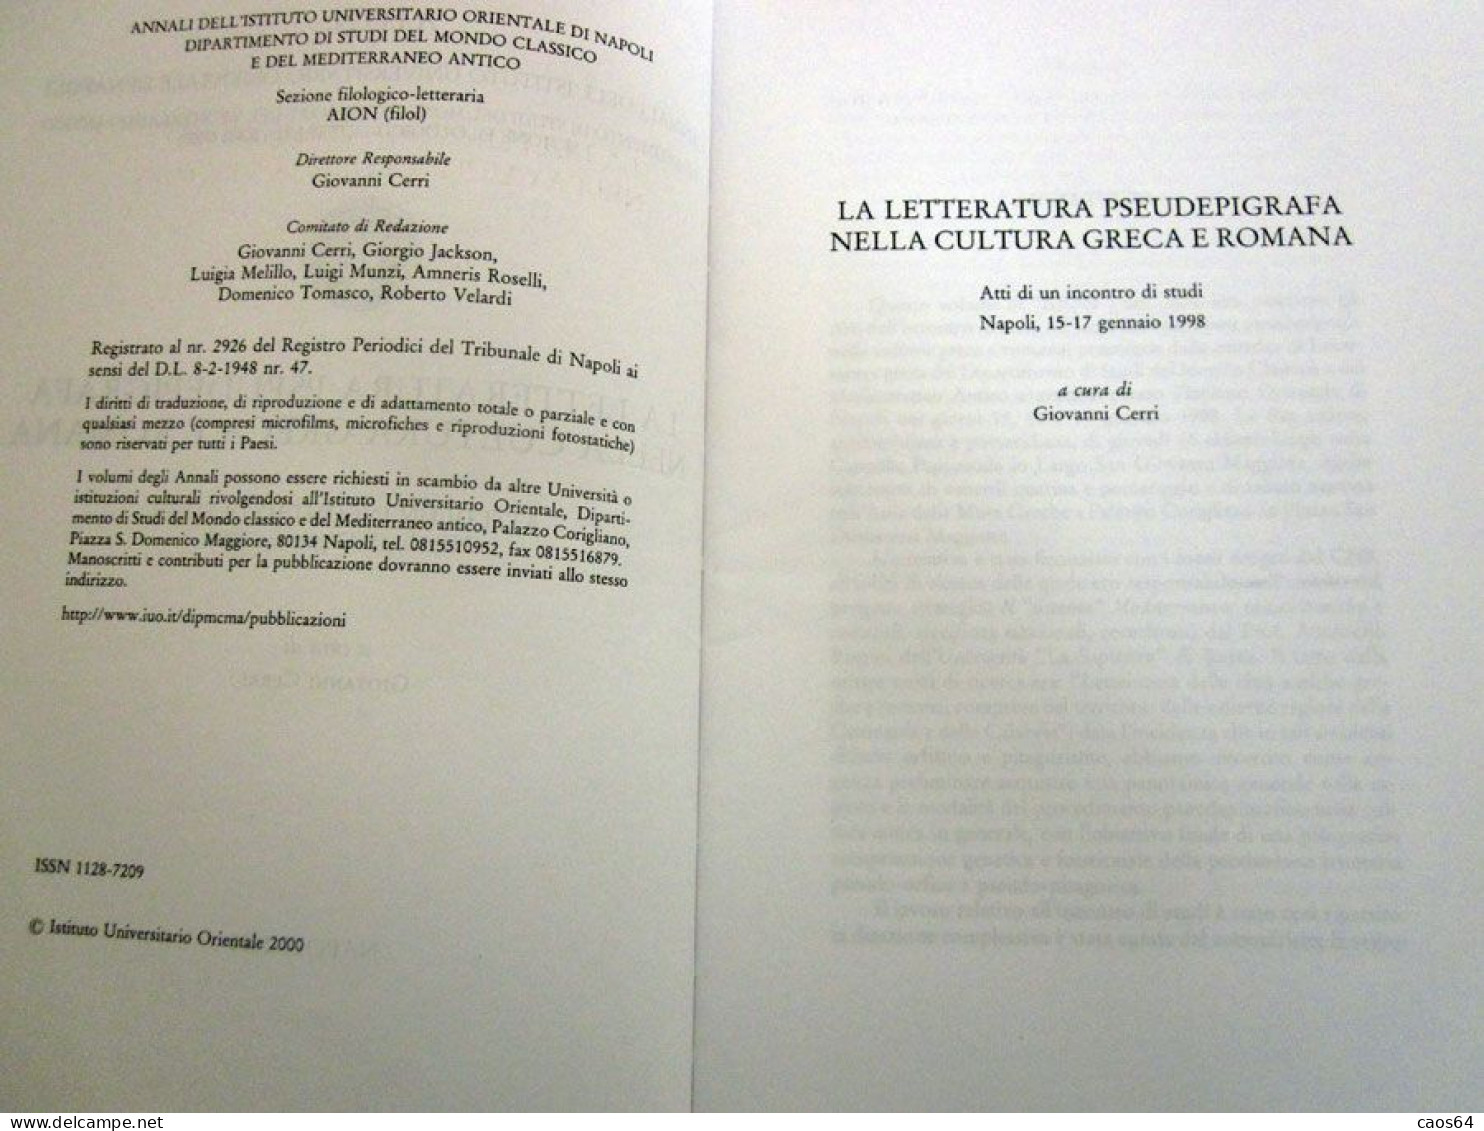 La letteratura pseudepigrafa nella cultura greco romana. G. Cerri Napoli 2000 AION